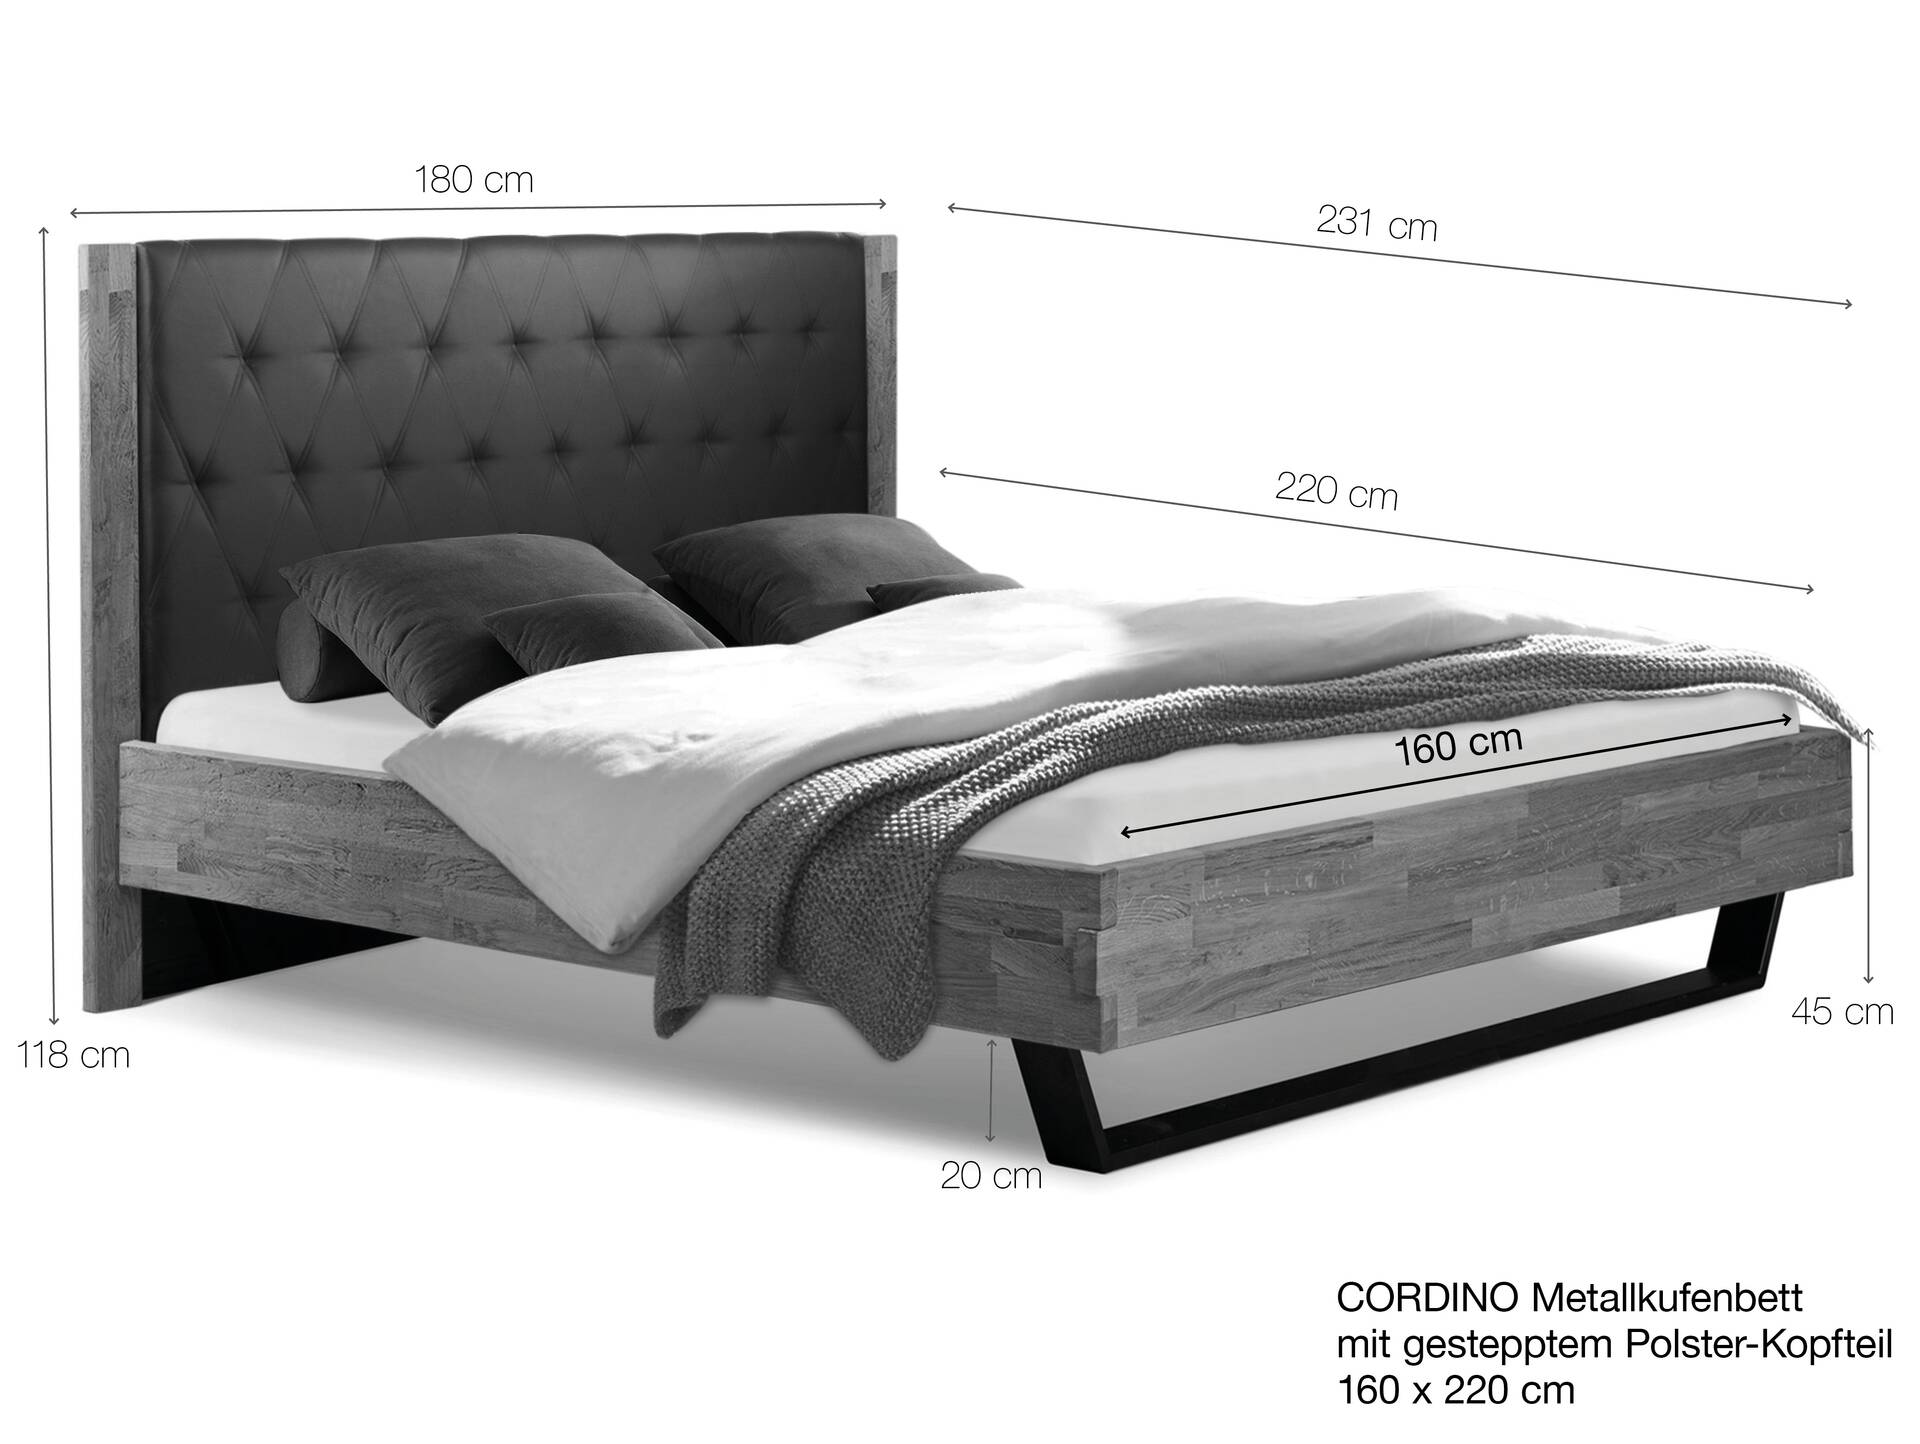 CORDINO Kufenbett aus Eiche mit gestepptem Polsterkopfteil, Material Massivholz 160 x 220 cm | Eiche lackiert | Stoff Anthrazit | gebürstet